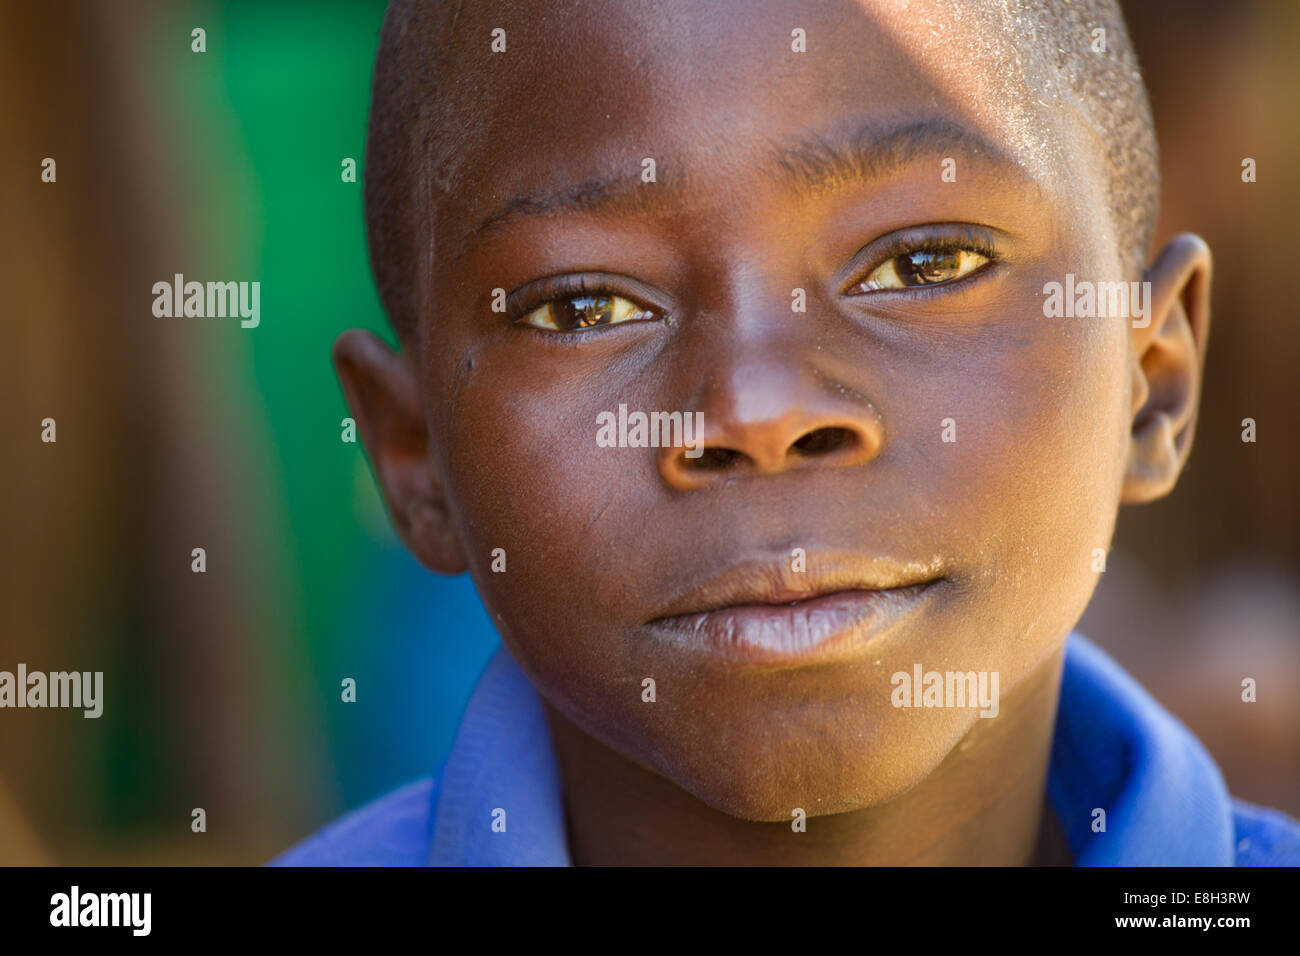 Un jeune garçon d'un village zambien se penche sur l'appareil photo. Banque D'Images